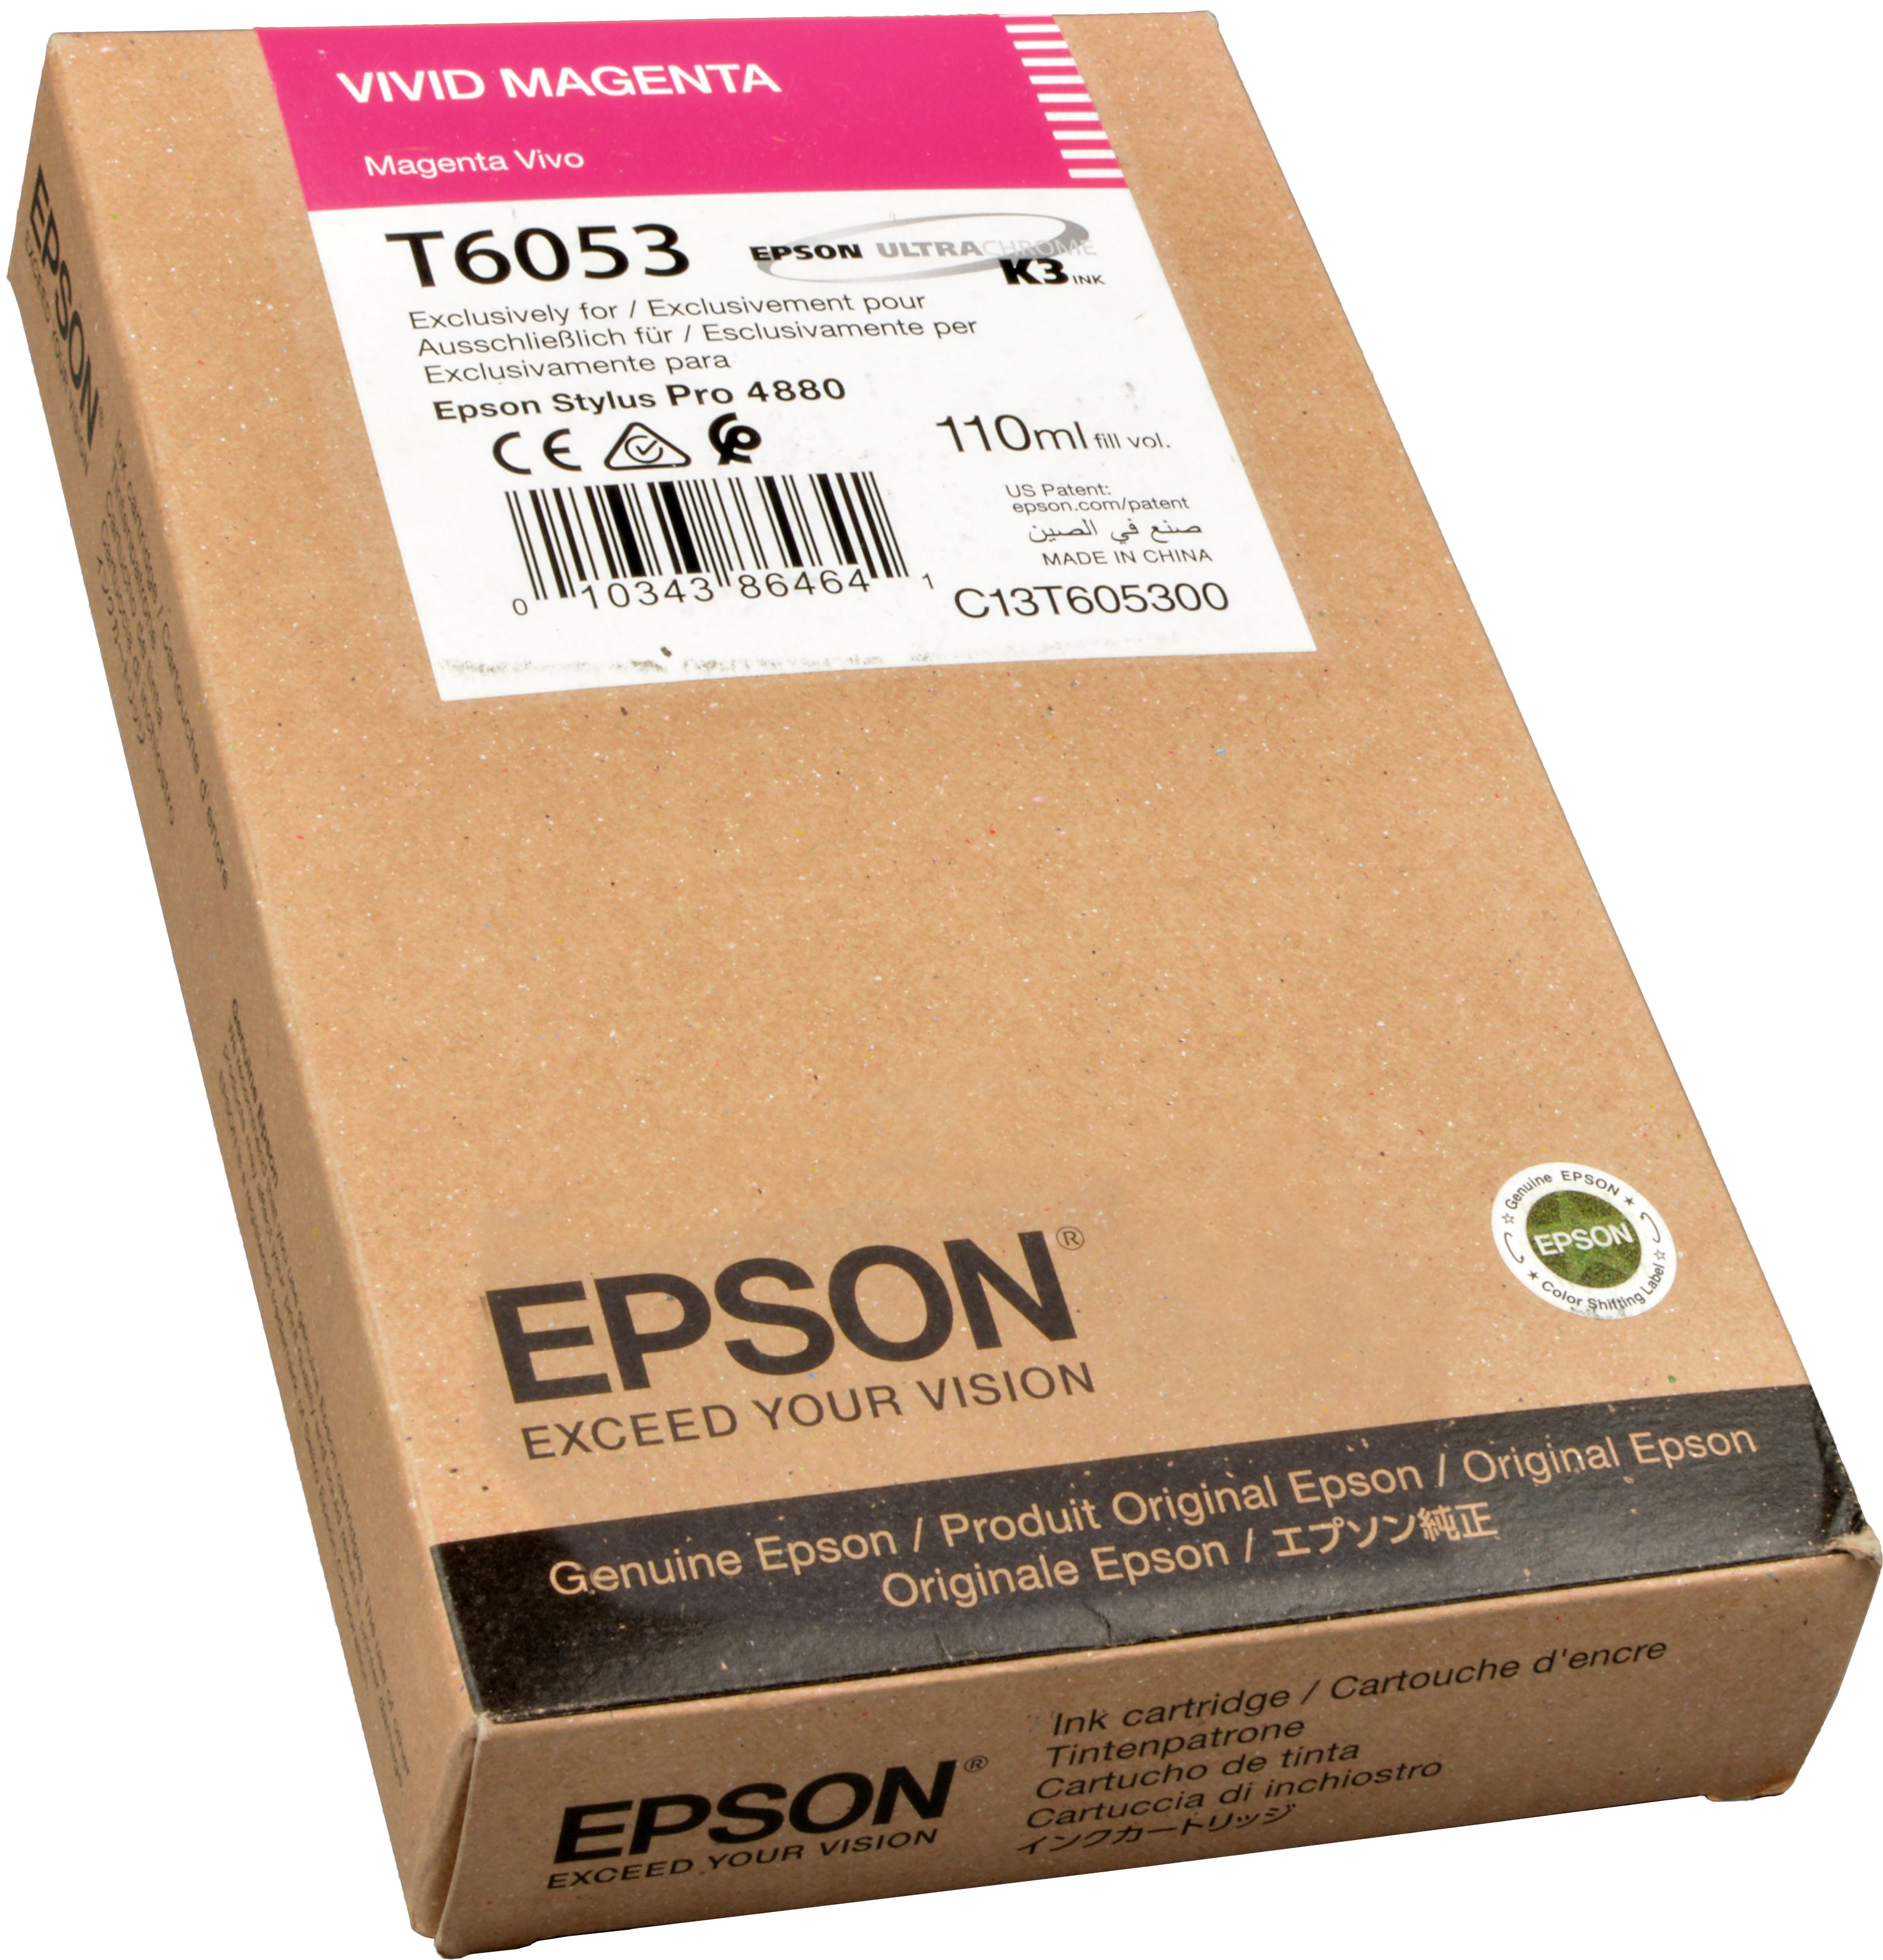 Epson Tinte C13T605300  magenta